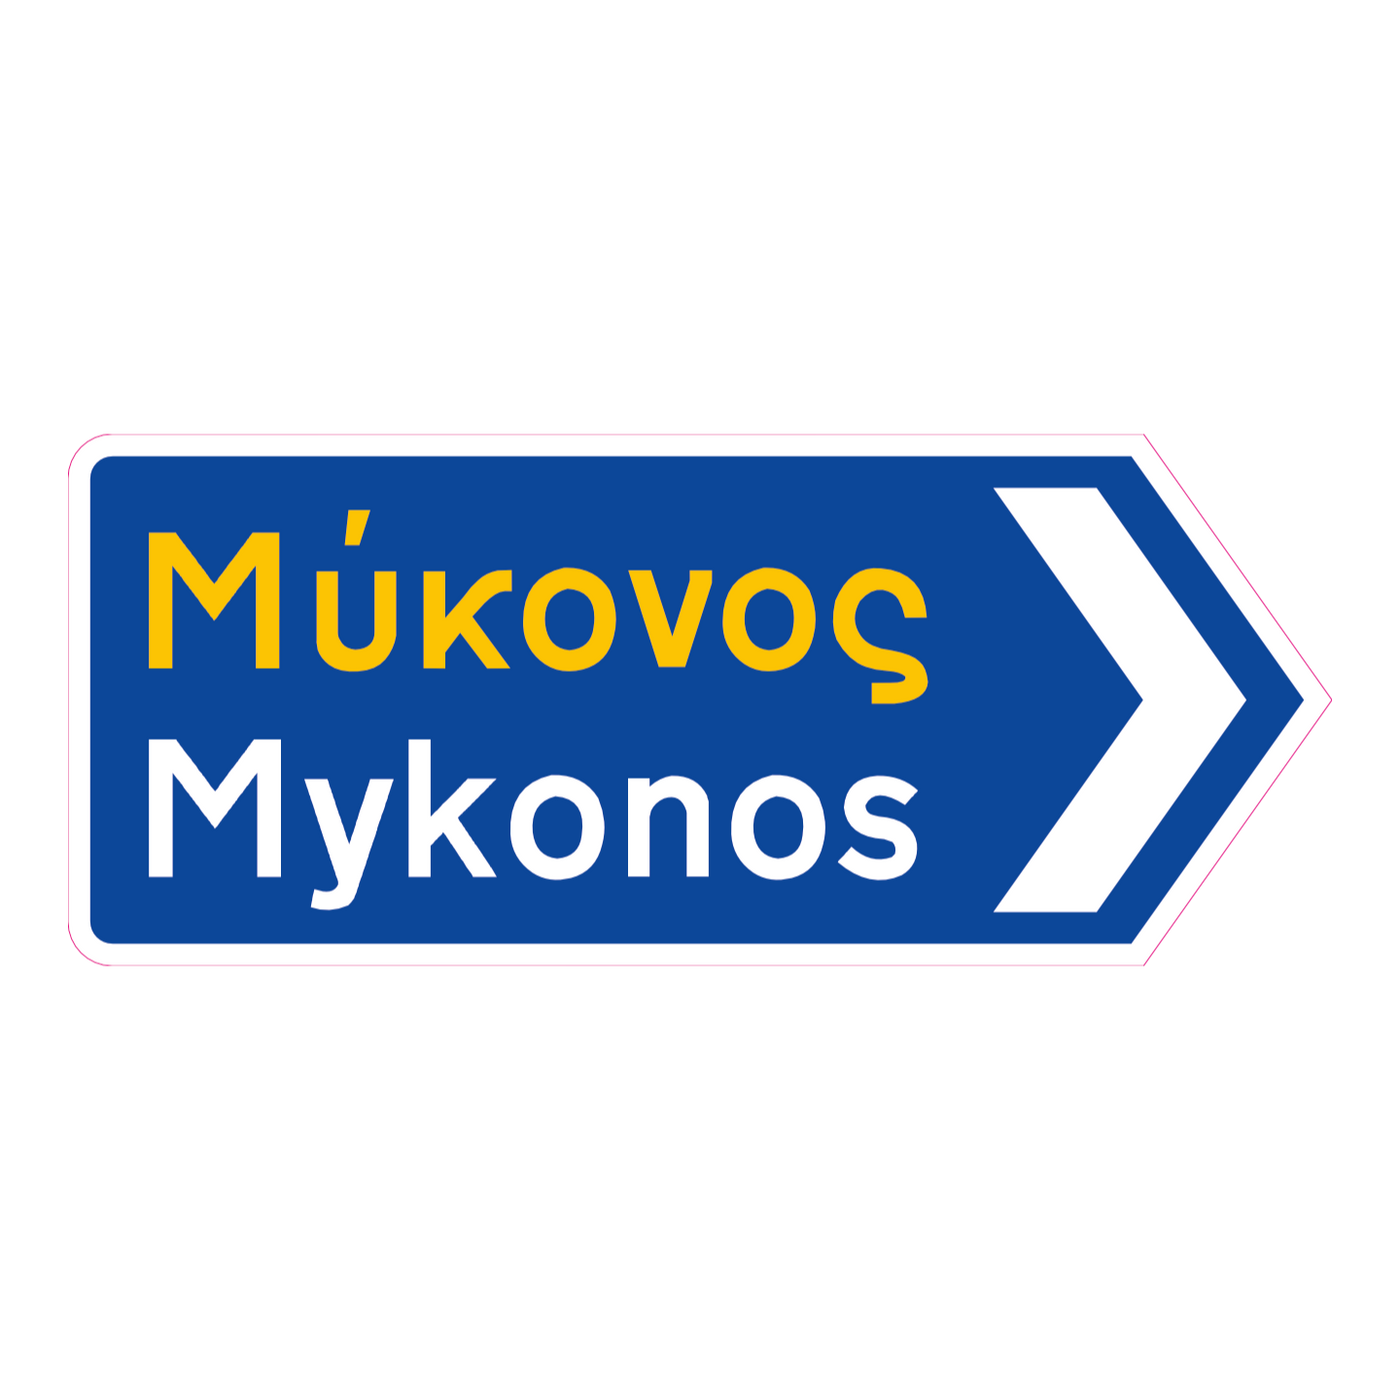 Mykonos Griechisches Verkehrsschild